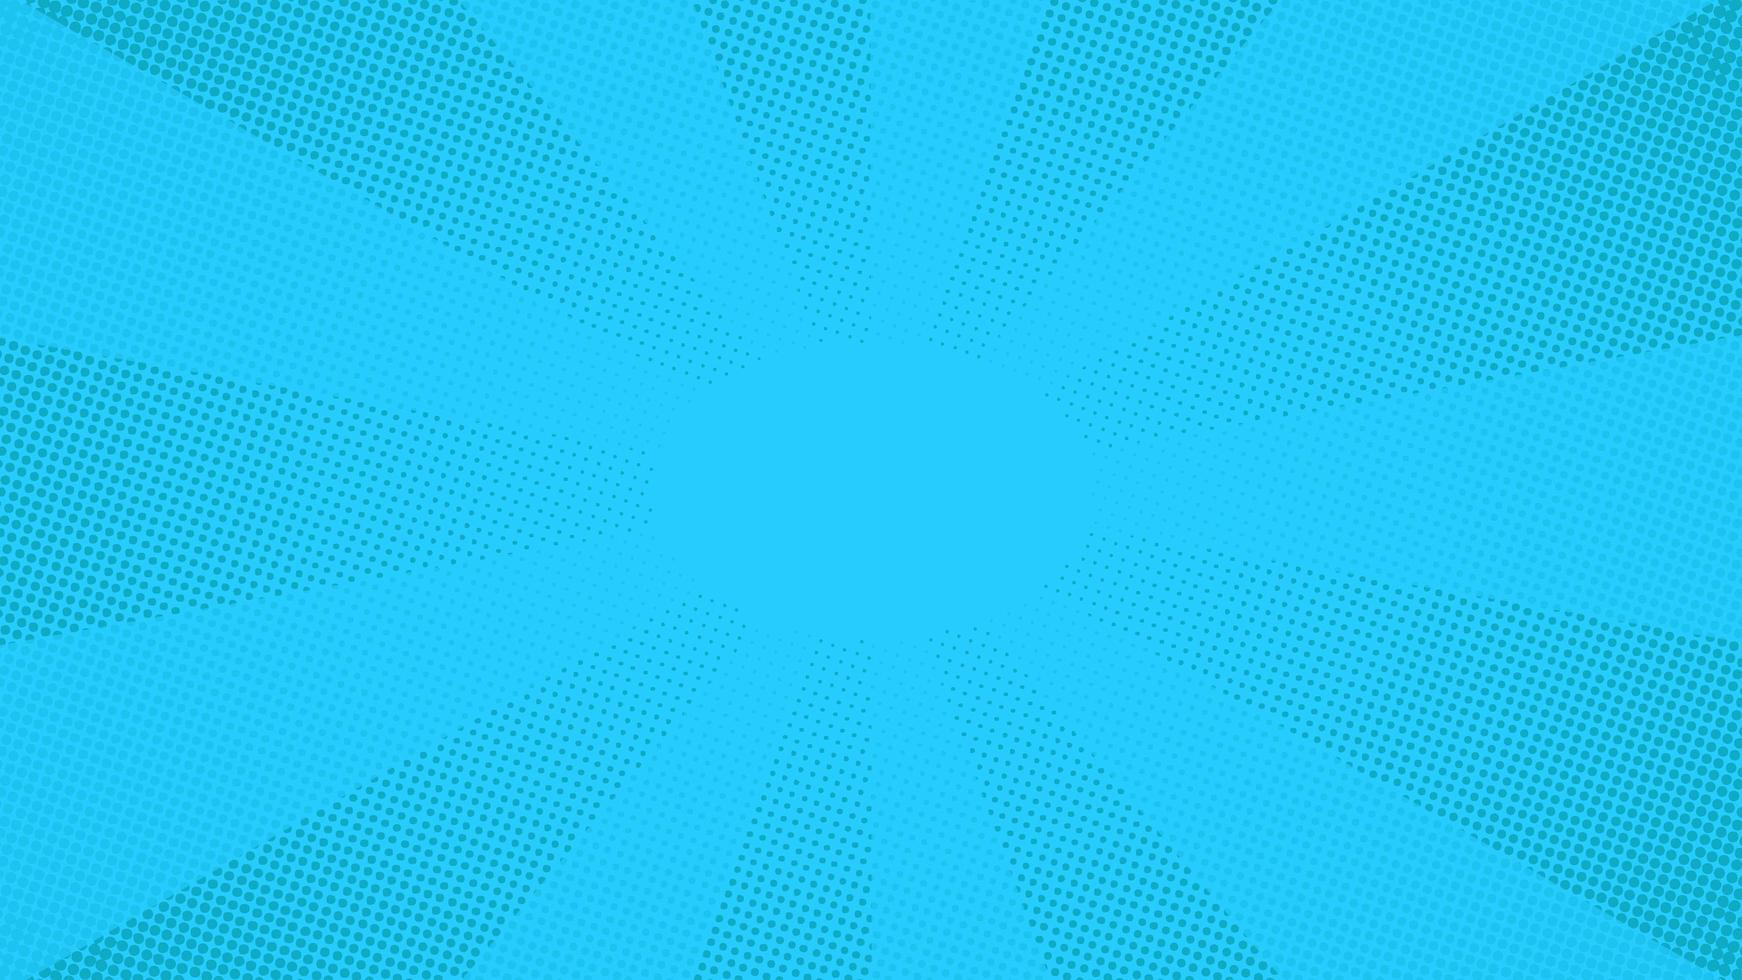 fundo azul pop art com pontos de meio-tom vetor